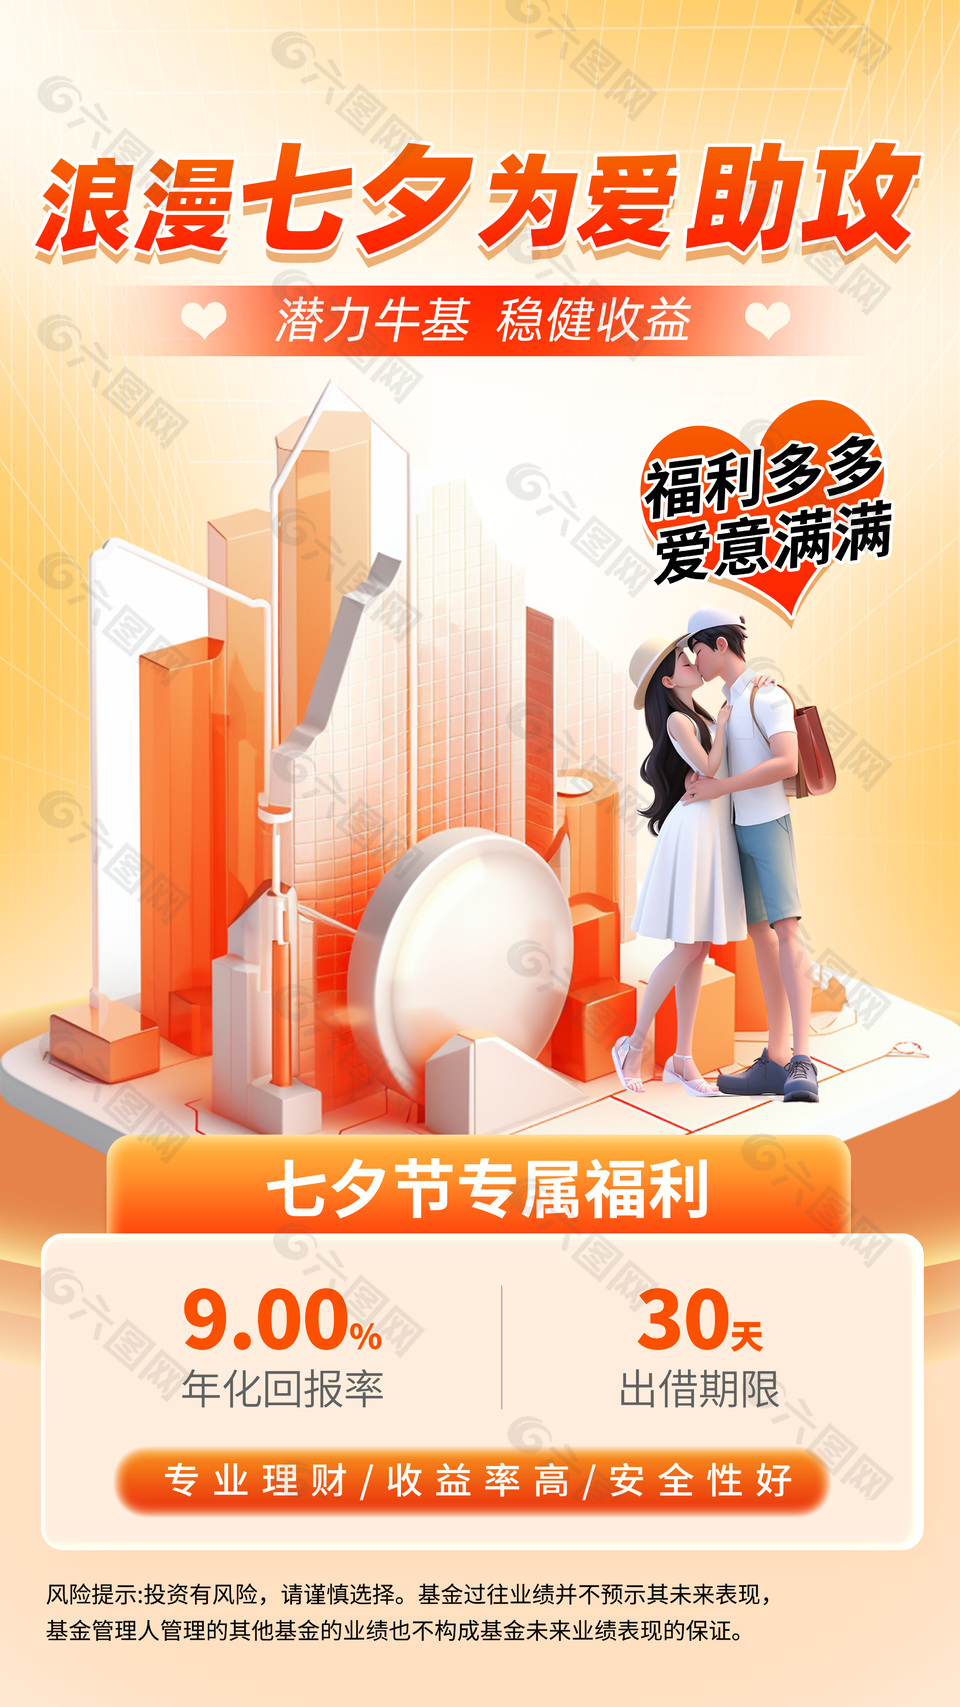 七夕节专属福利专业理财产品宣传海报